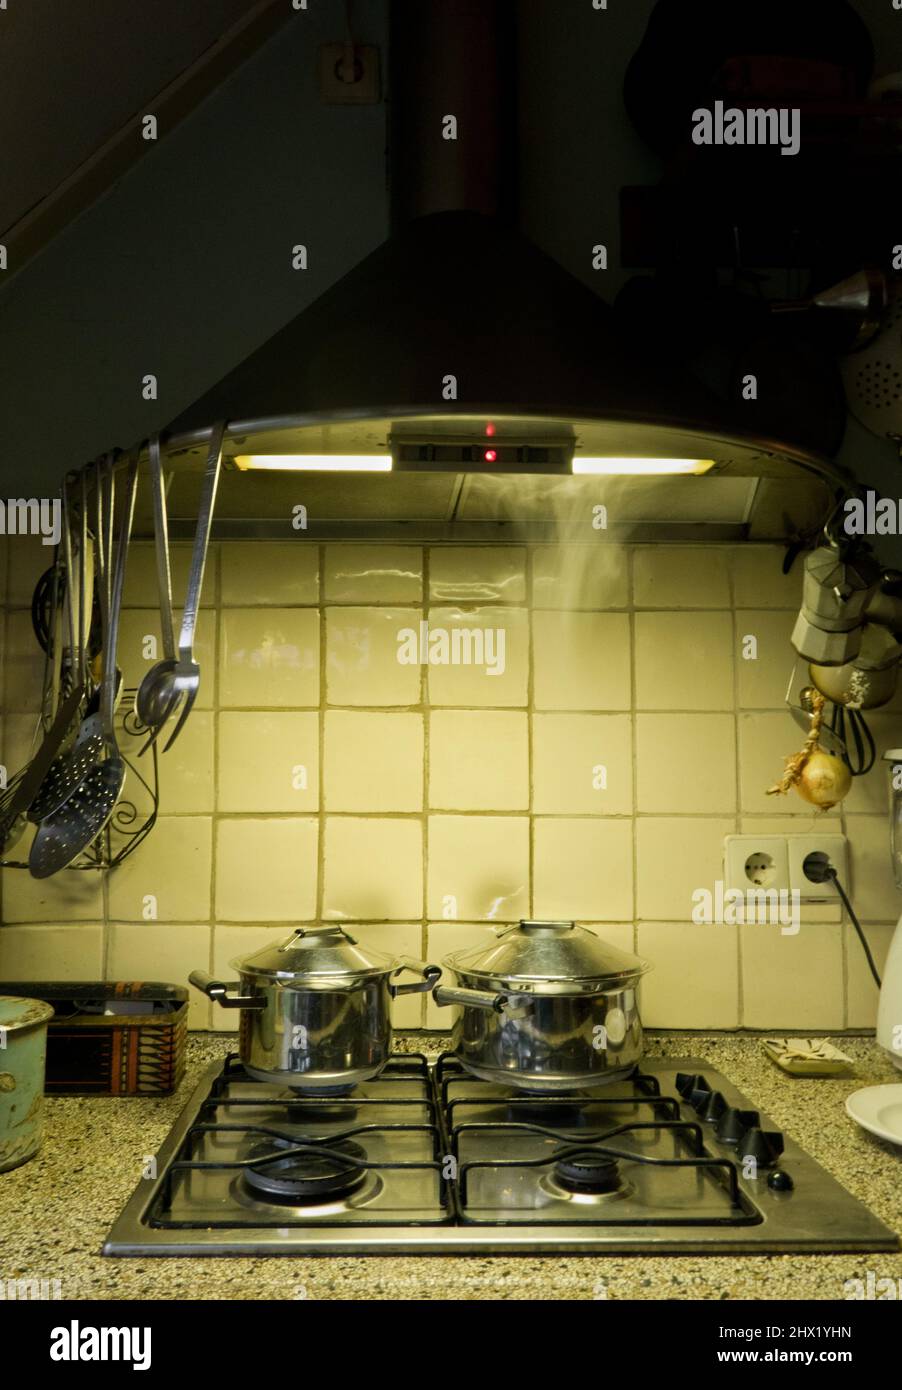 Zubereitung der Mahlzeiten am Abend: Pfannen auf dem Gasherd in der Küche bei Nachtlicht Stockfoto